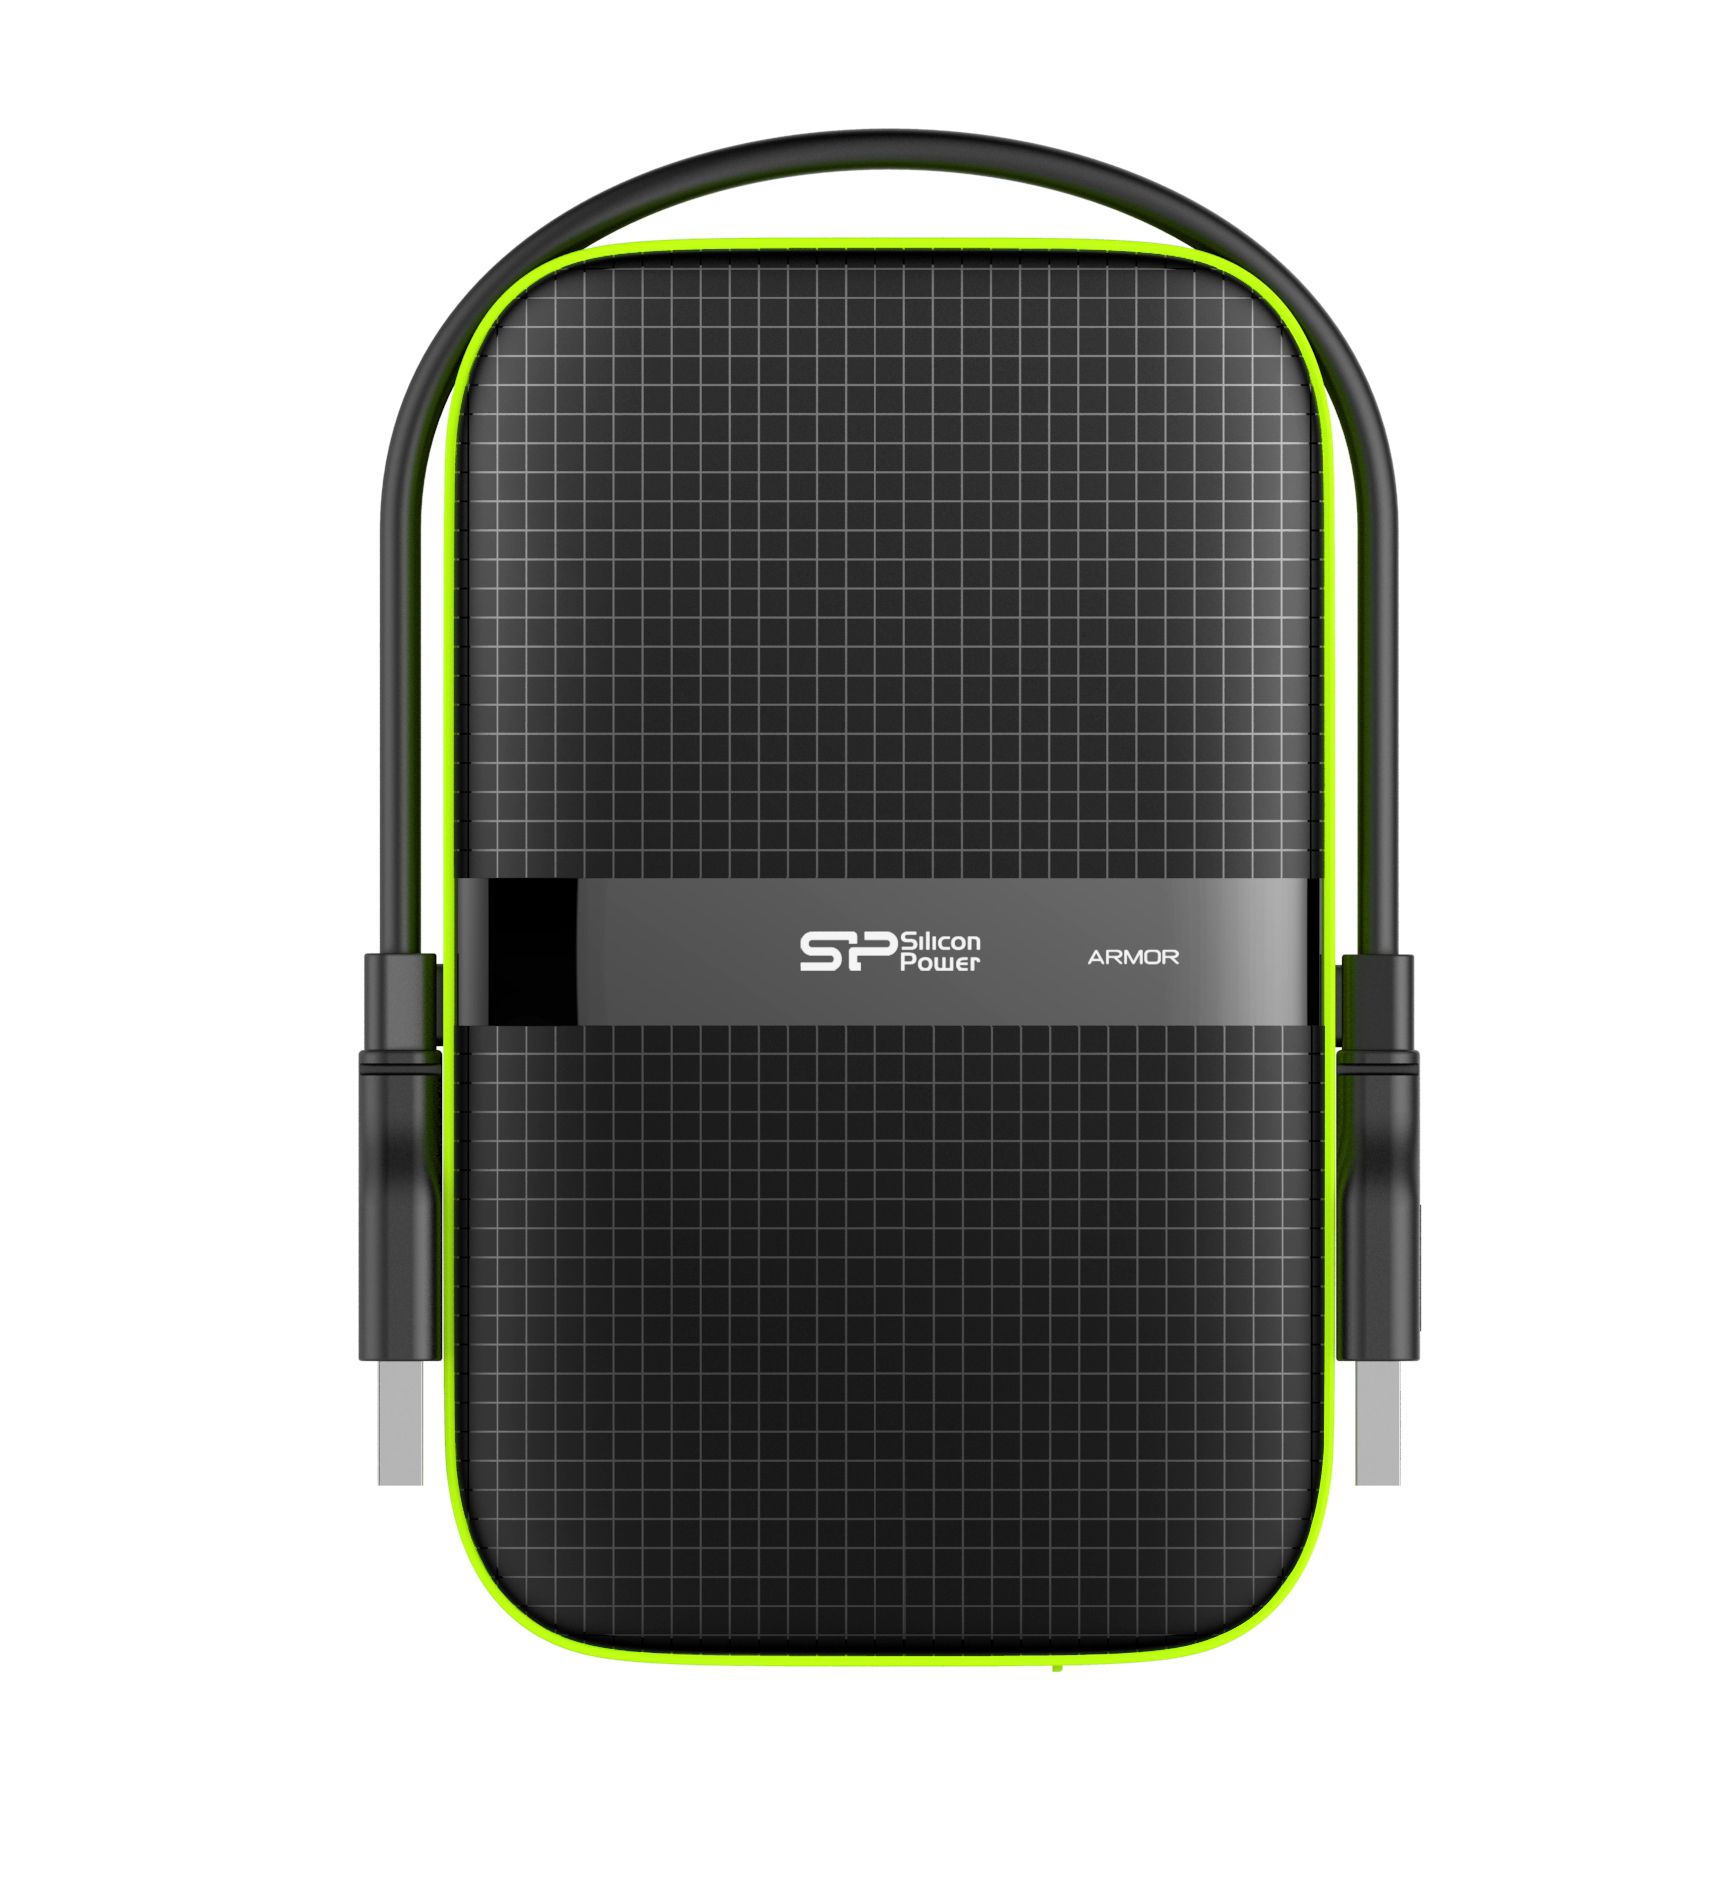 Externí pevný disk Silicon Power Armor A60 4000 GB černý, zelený od ninex.cz